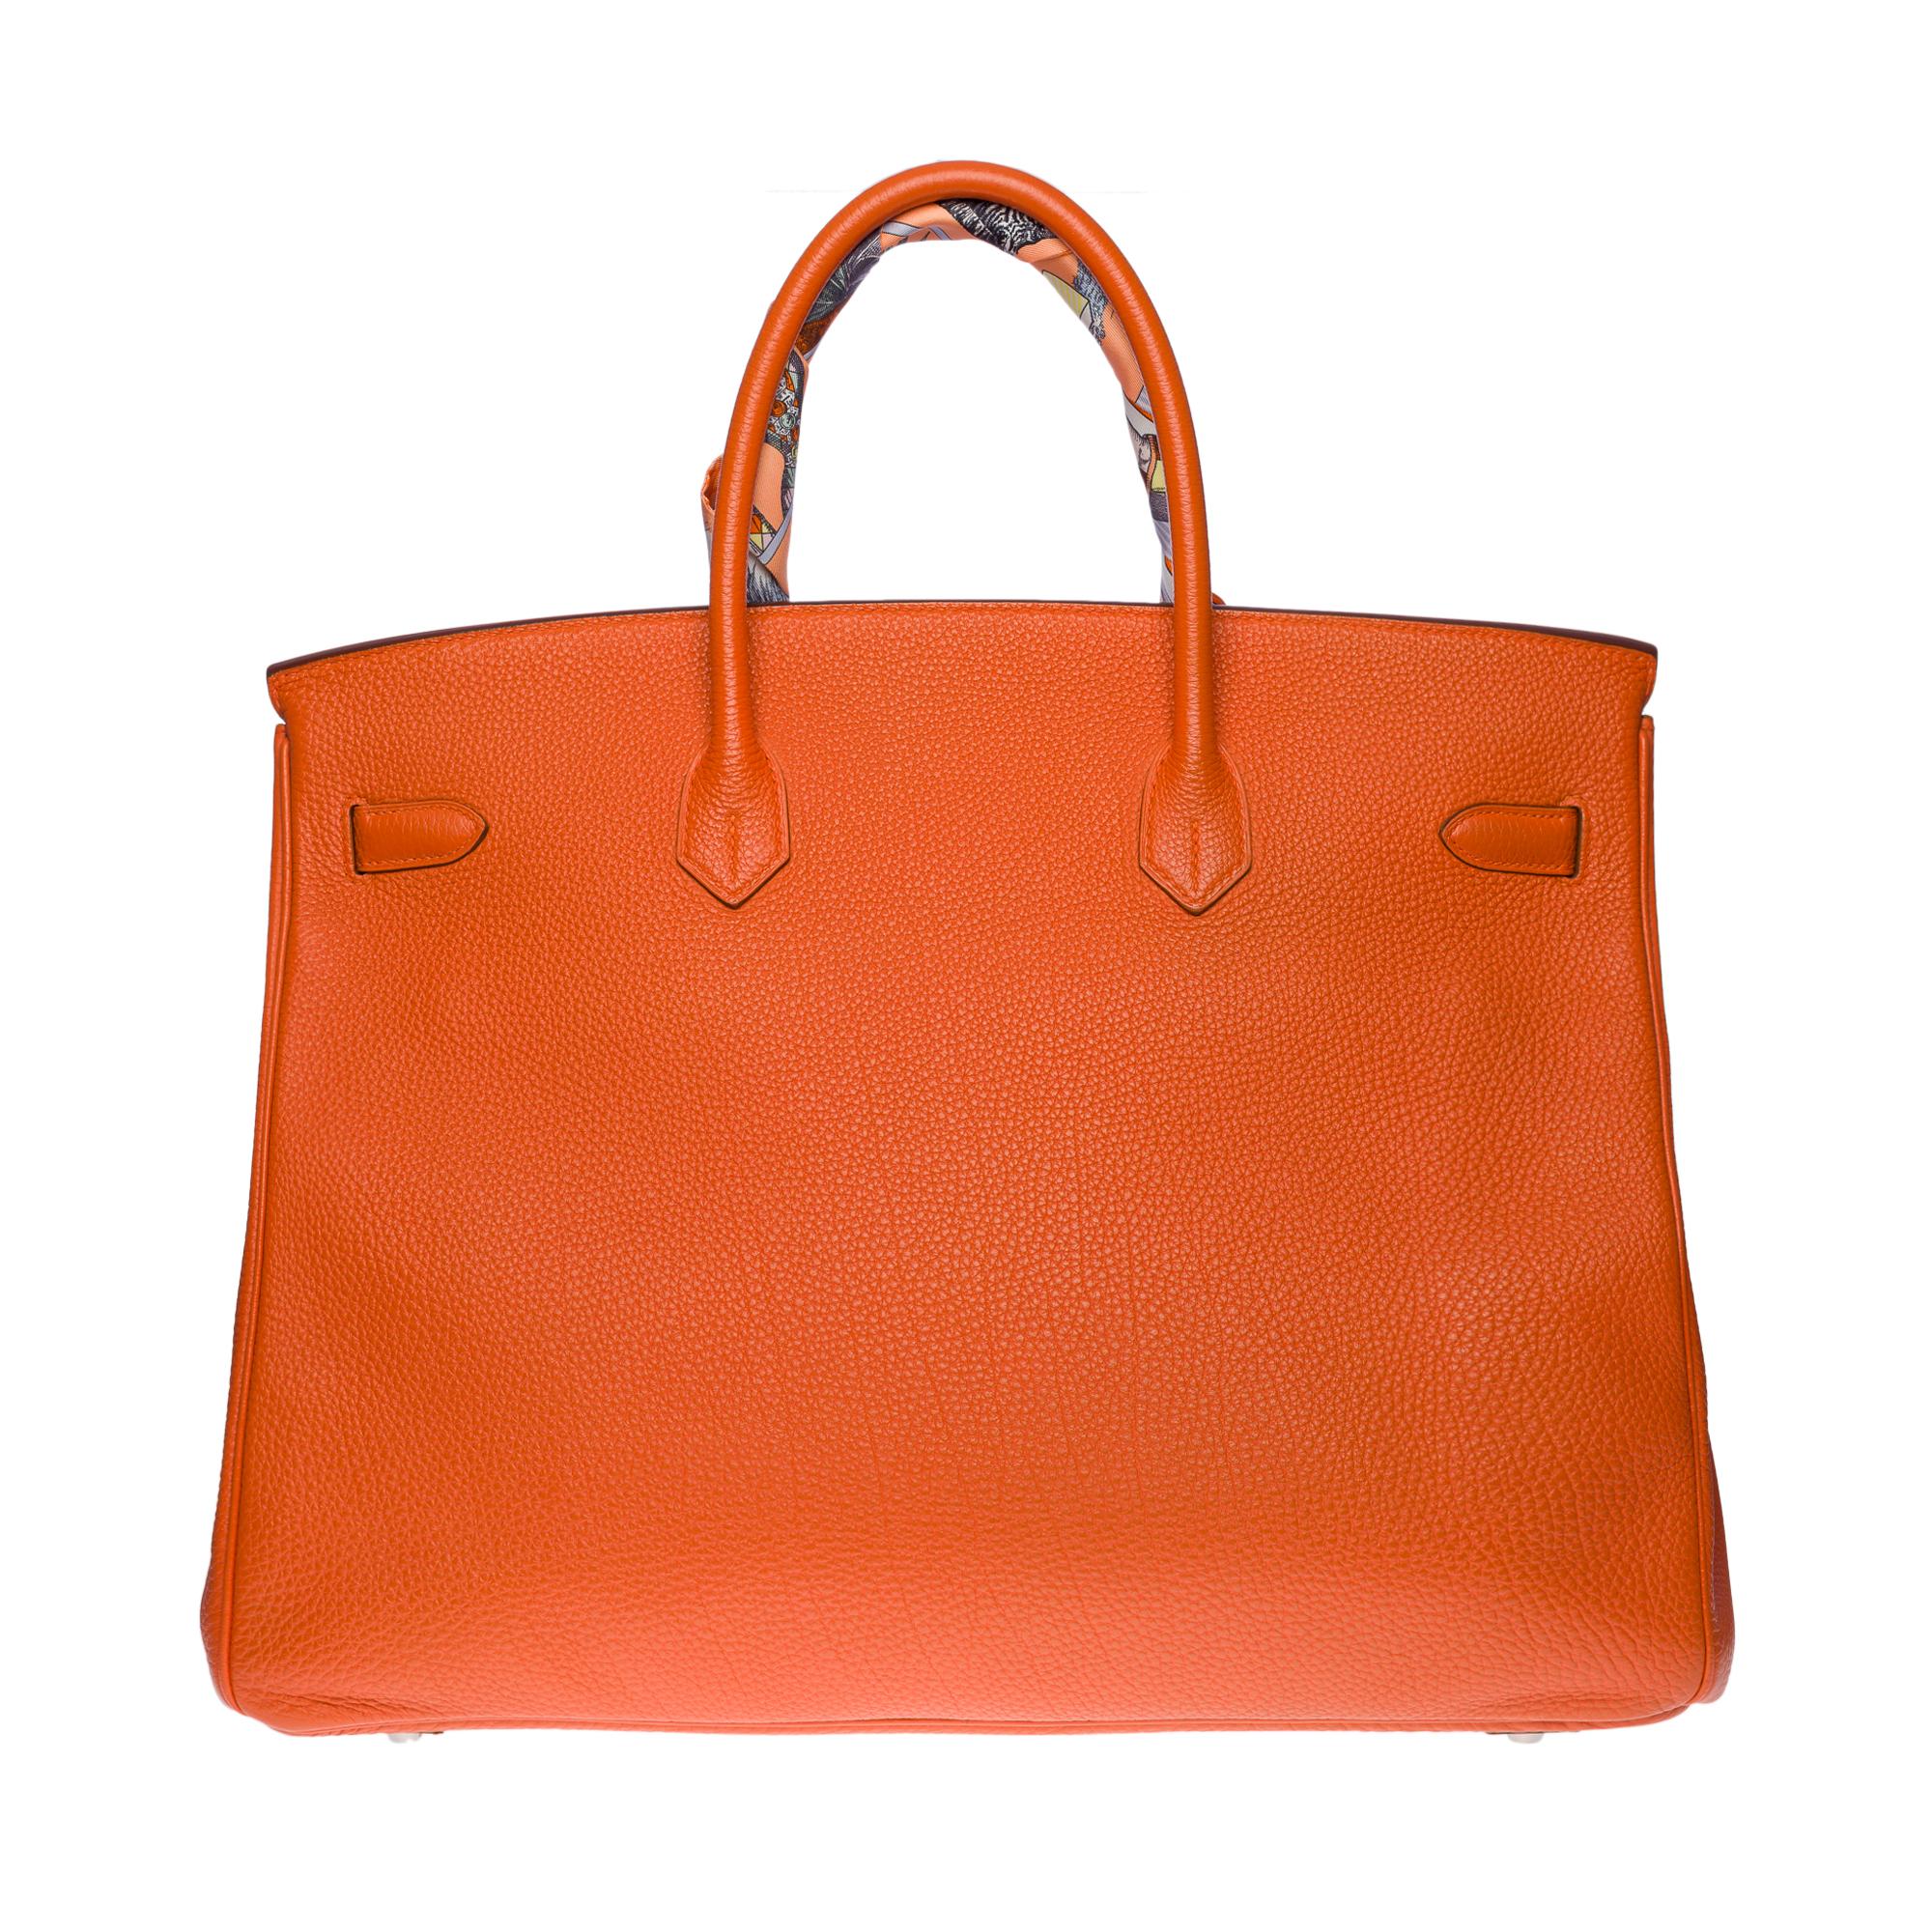 Stunning Hermes Birkin 40cm handbag in Orange Terre battue Togo leather, SHW In Excellent Condition In Paris, IDF